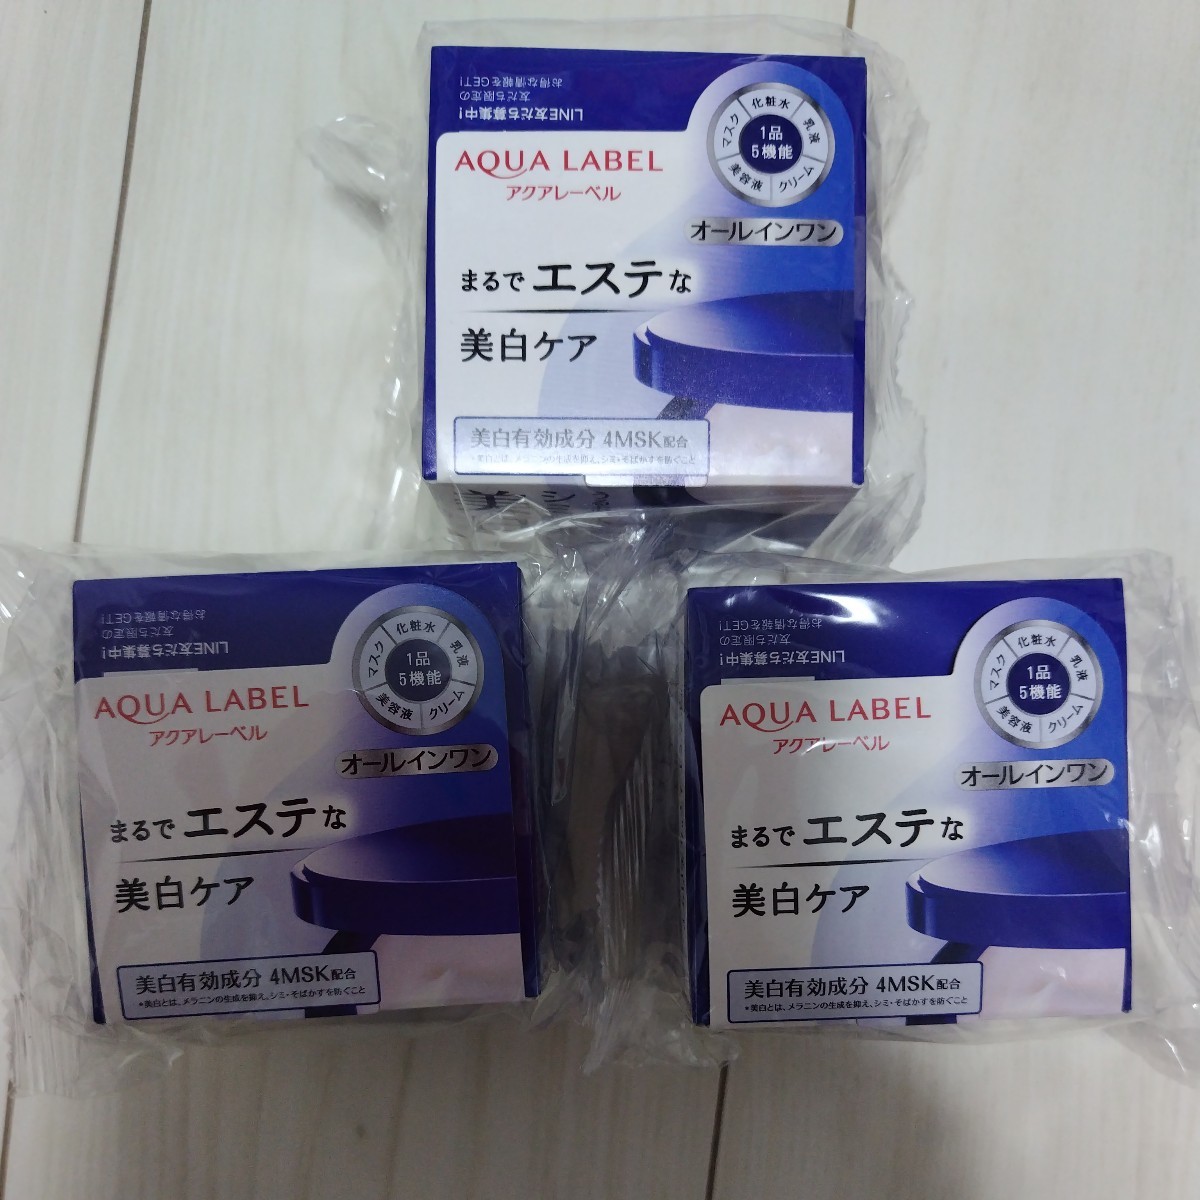 * новый товар * Shiseido Aqua Label специальный гель крем белый прекрасный белый крем 3 шт. комплект гель крем все в одном 